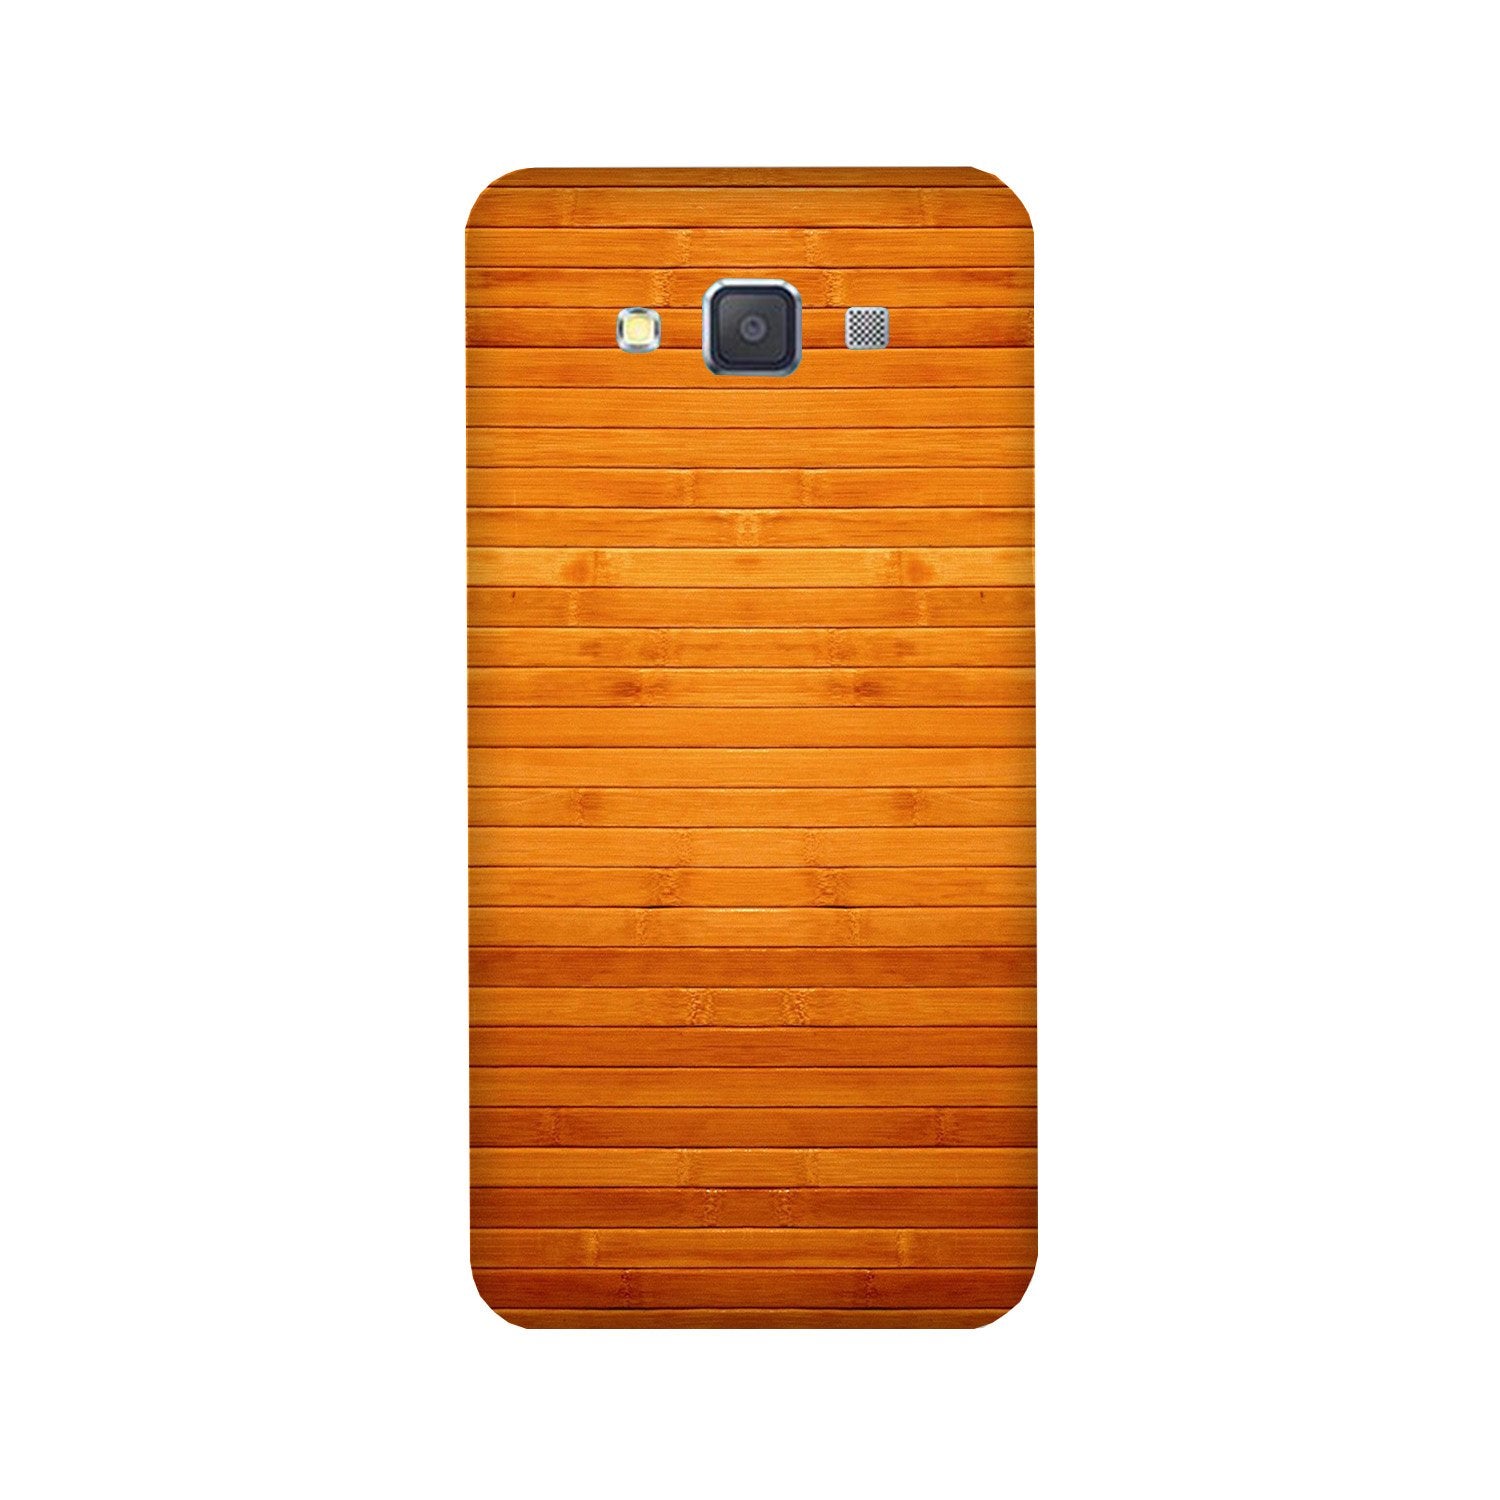 Wooden Look Case for Galaxy E7  (Design - 111)